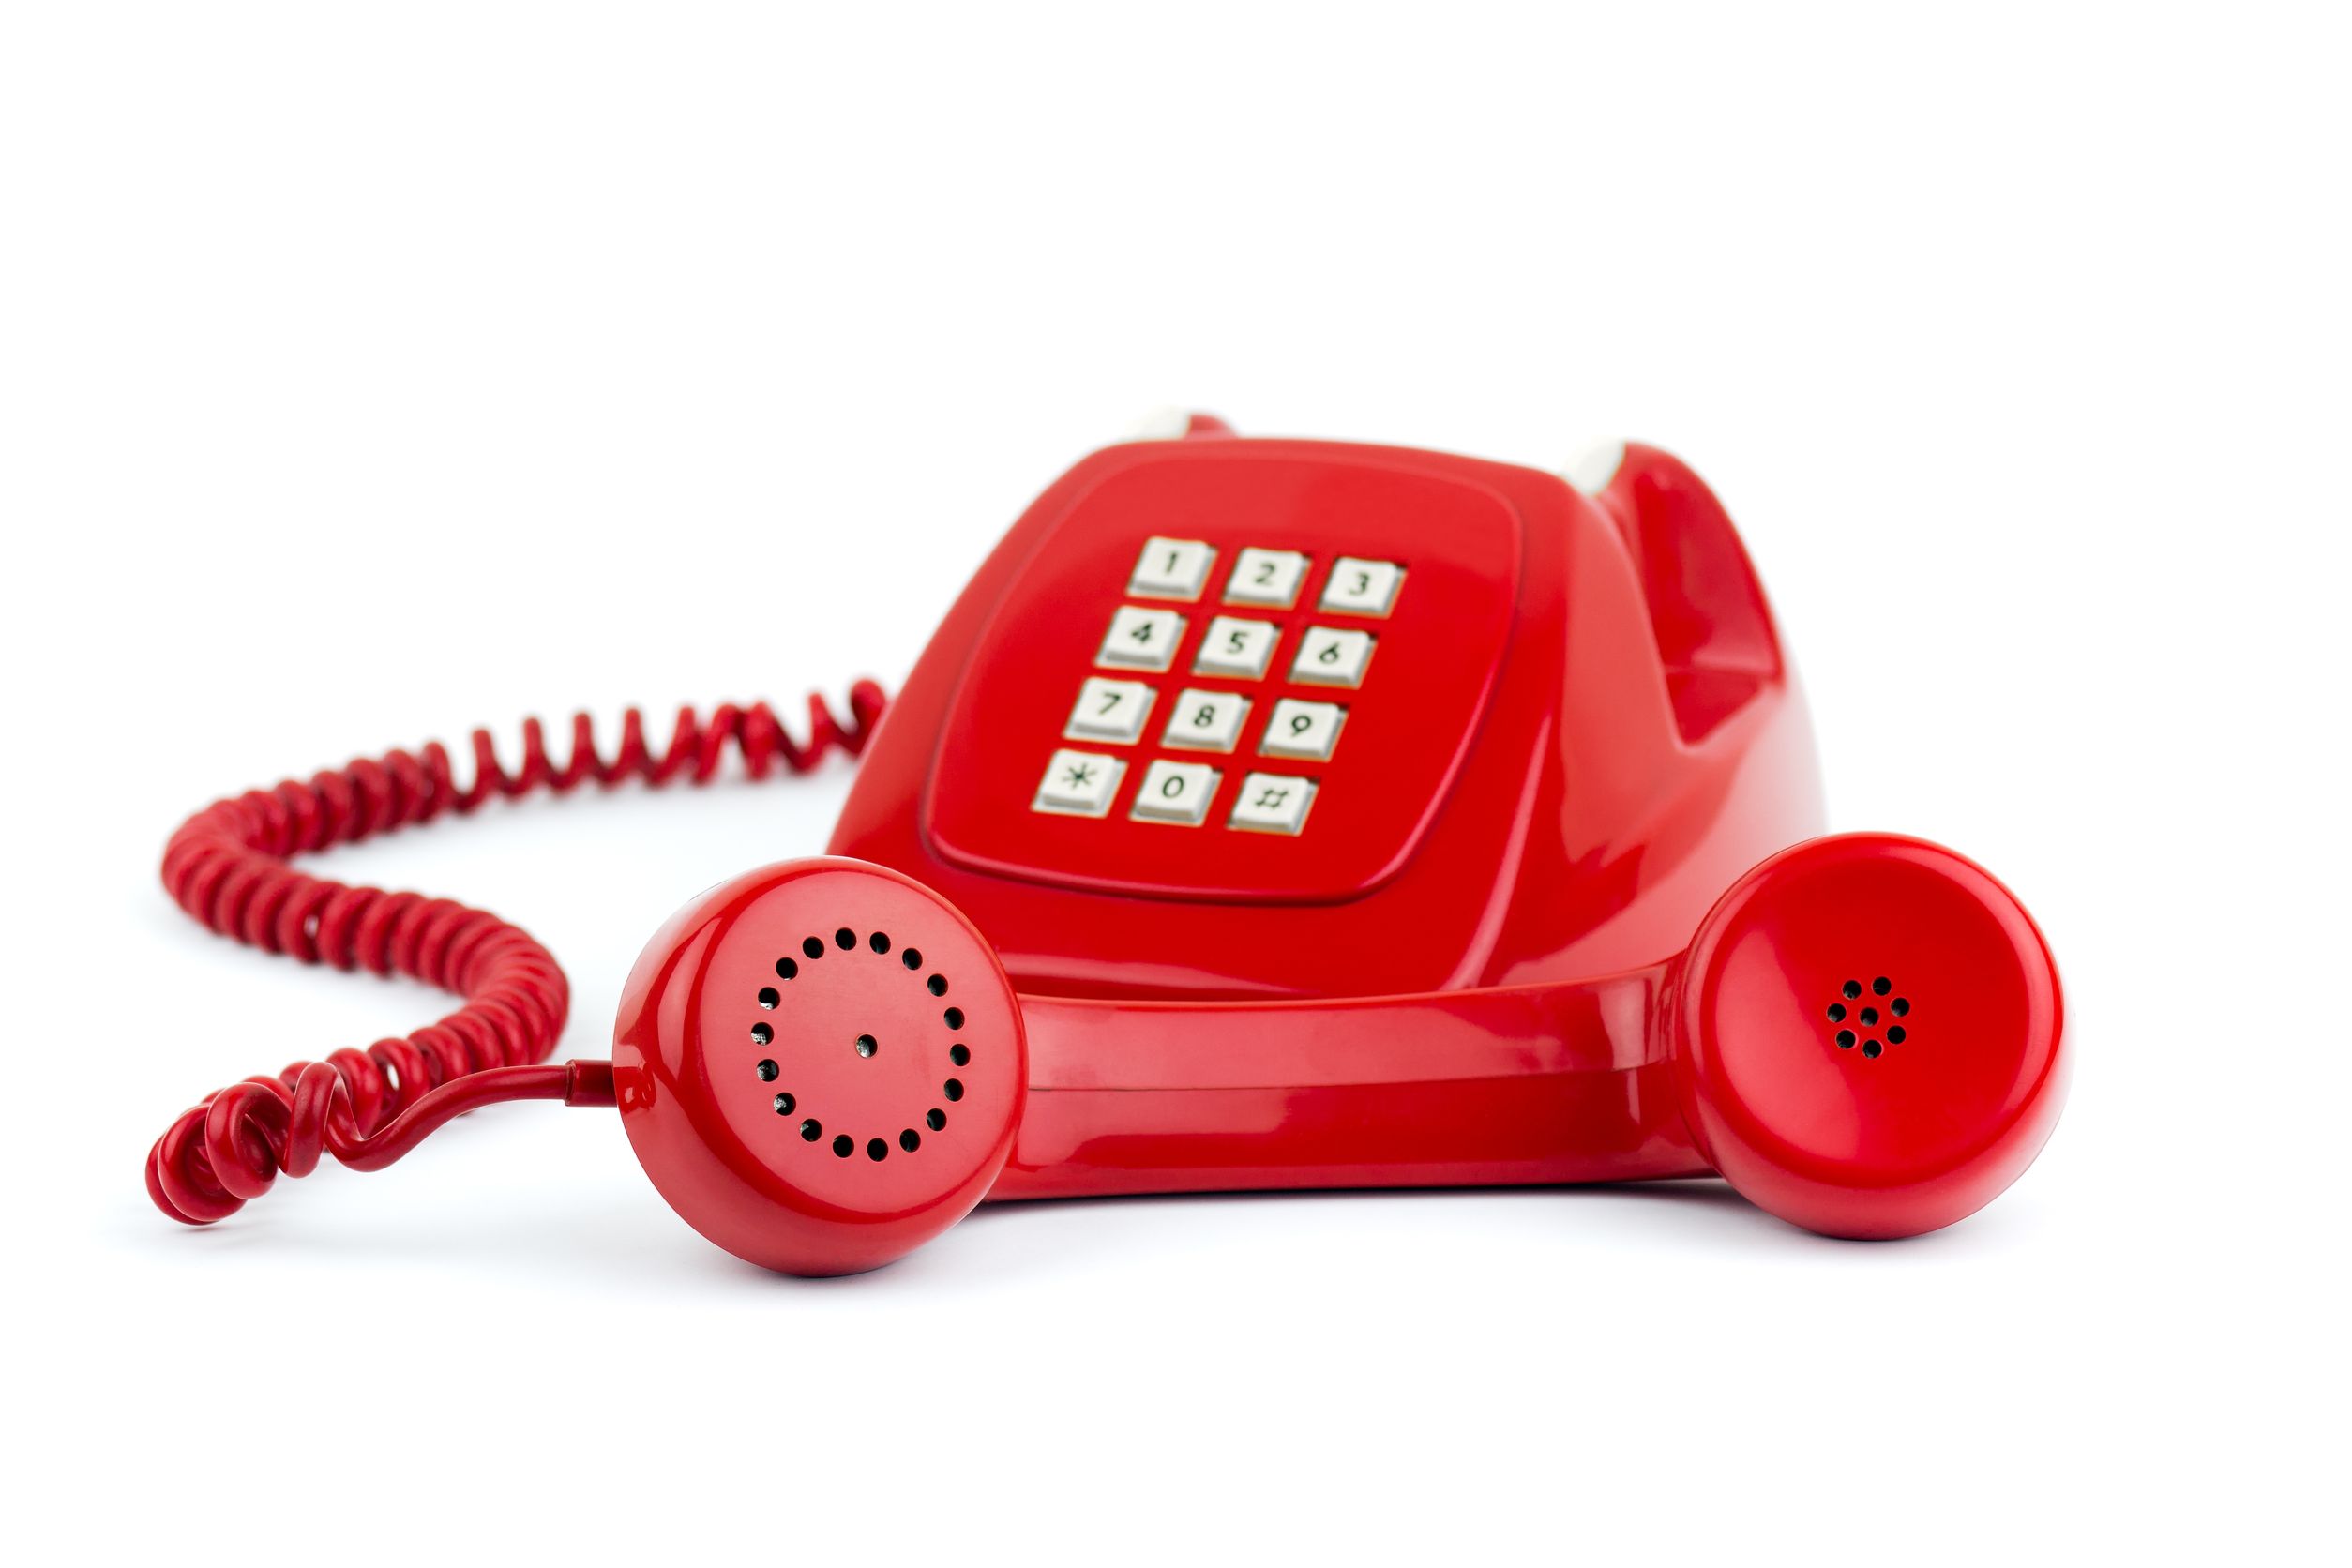 Горячие телефоны минск. Красный телефон. Горячая телефонная линия. Телефонная трубка. Телефон проводной красный.